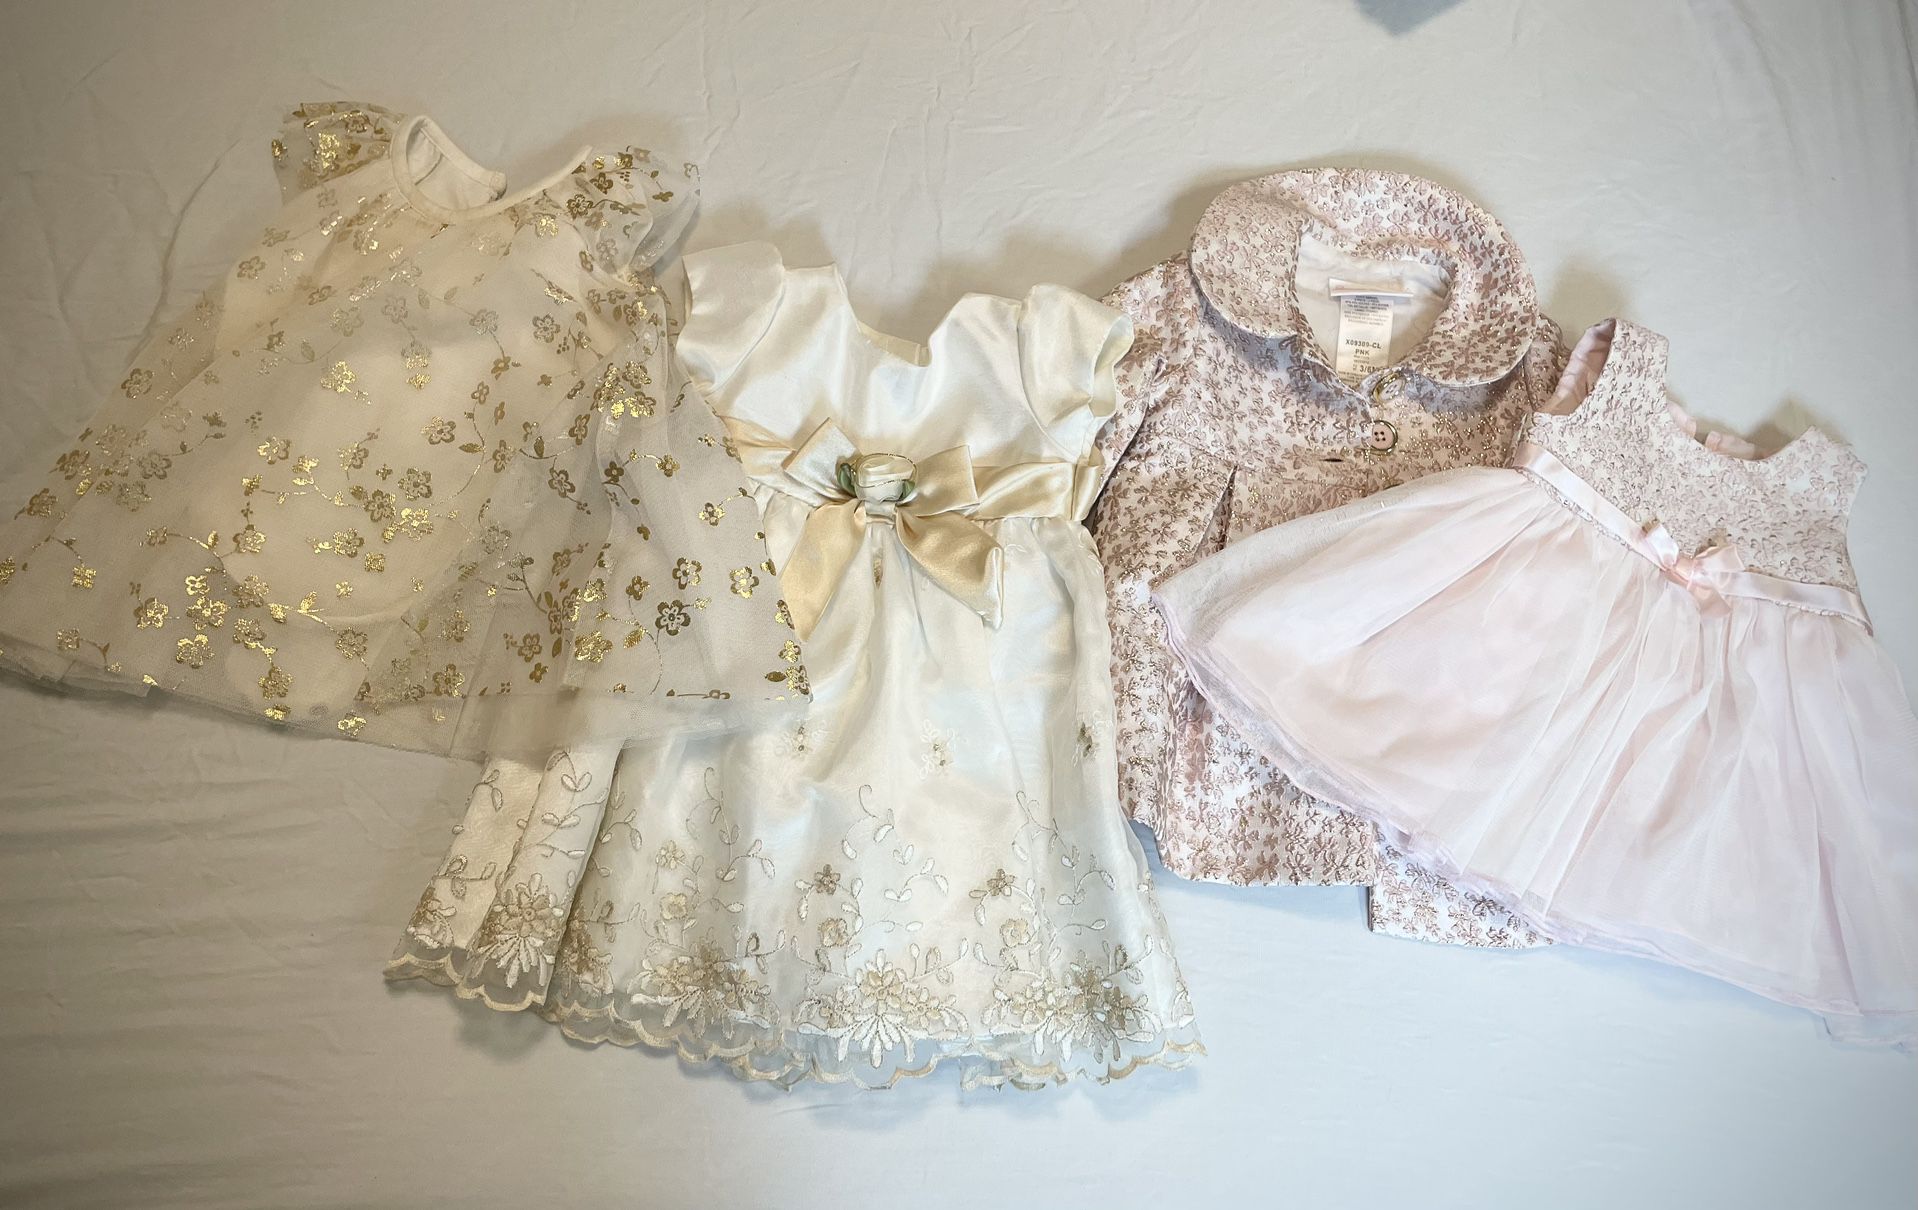 Baby Dresses